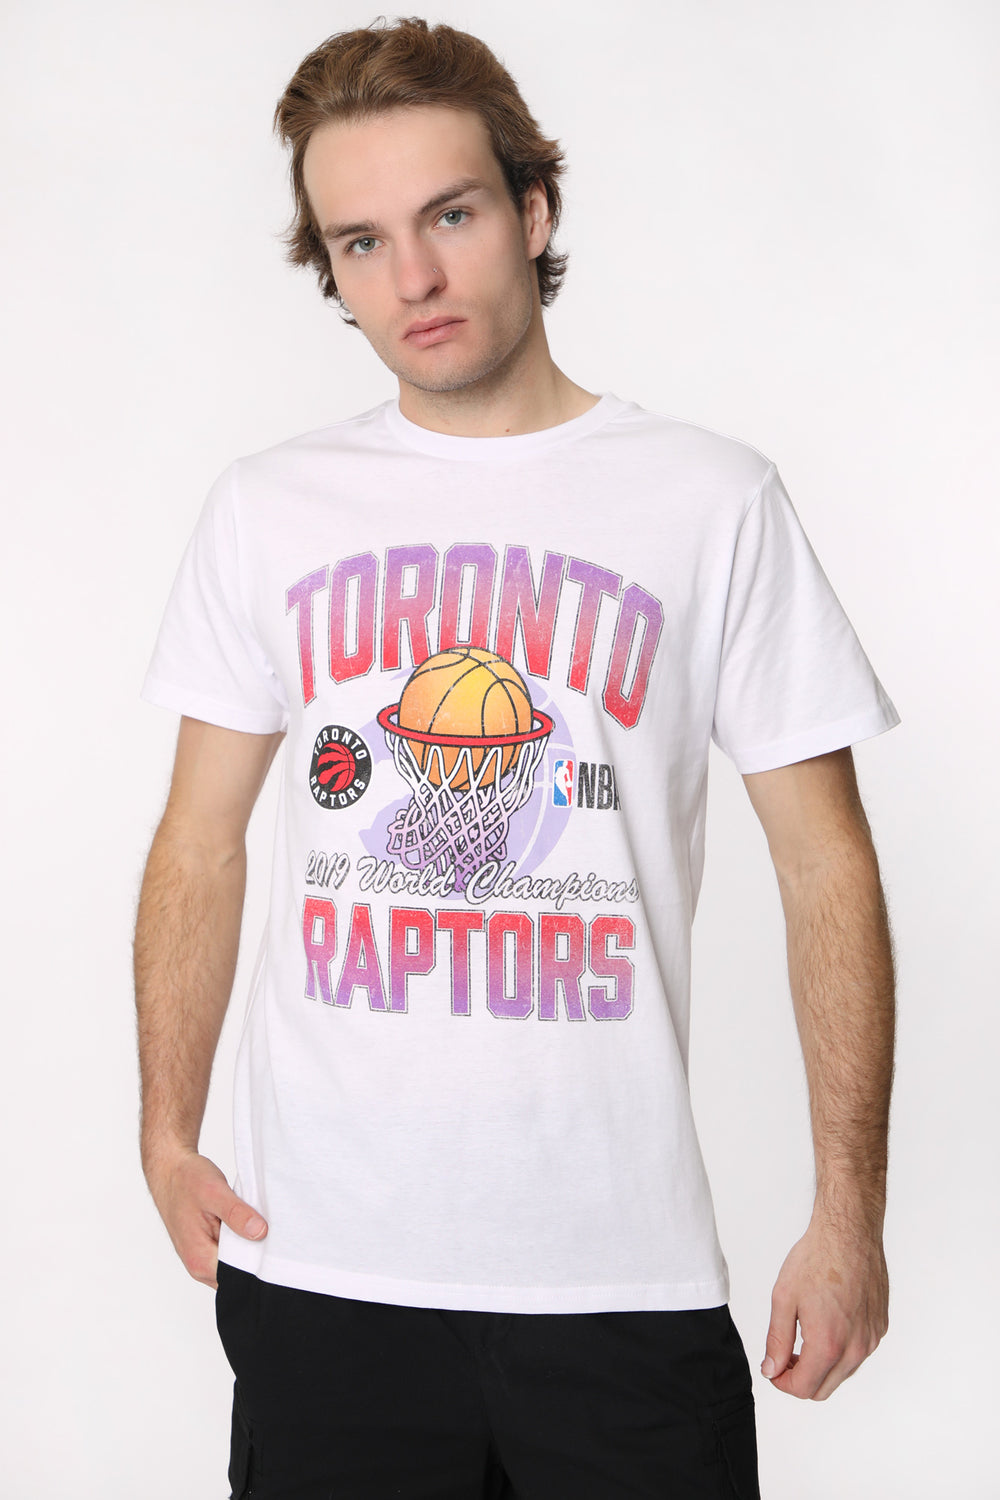 T-Shirt Imprimé Toronto Raptors Homme T-Shirt Imprimé Toronto Raptors Homme